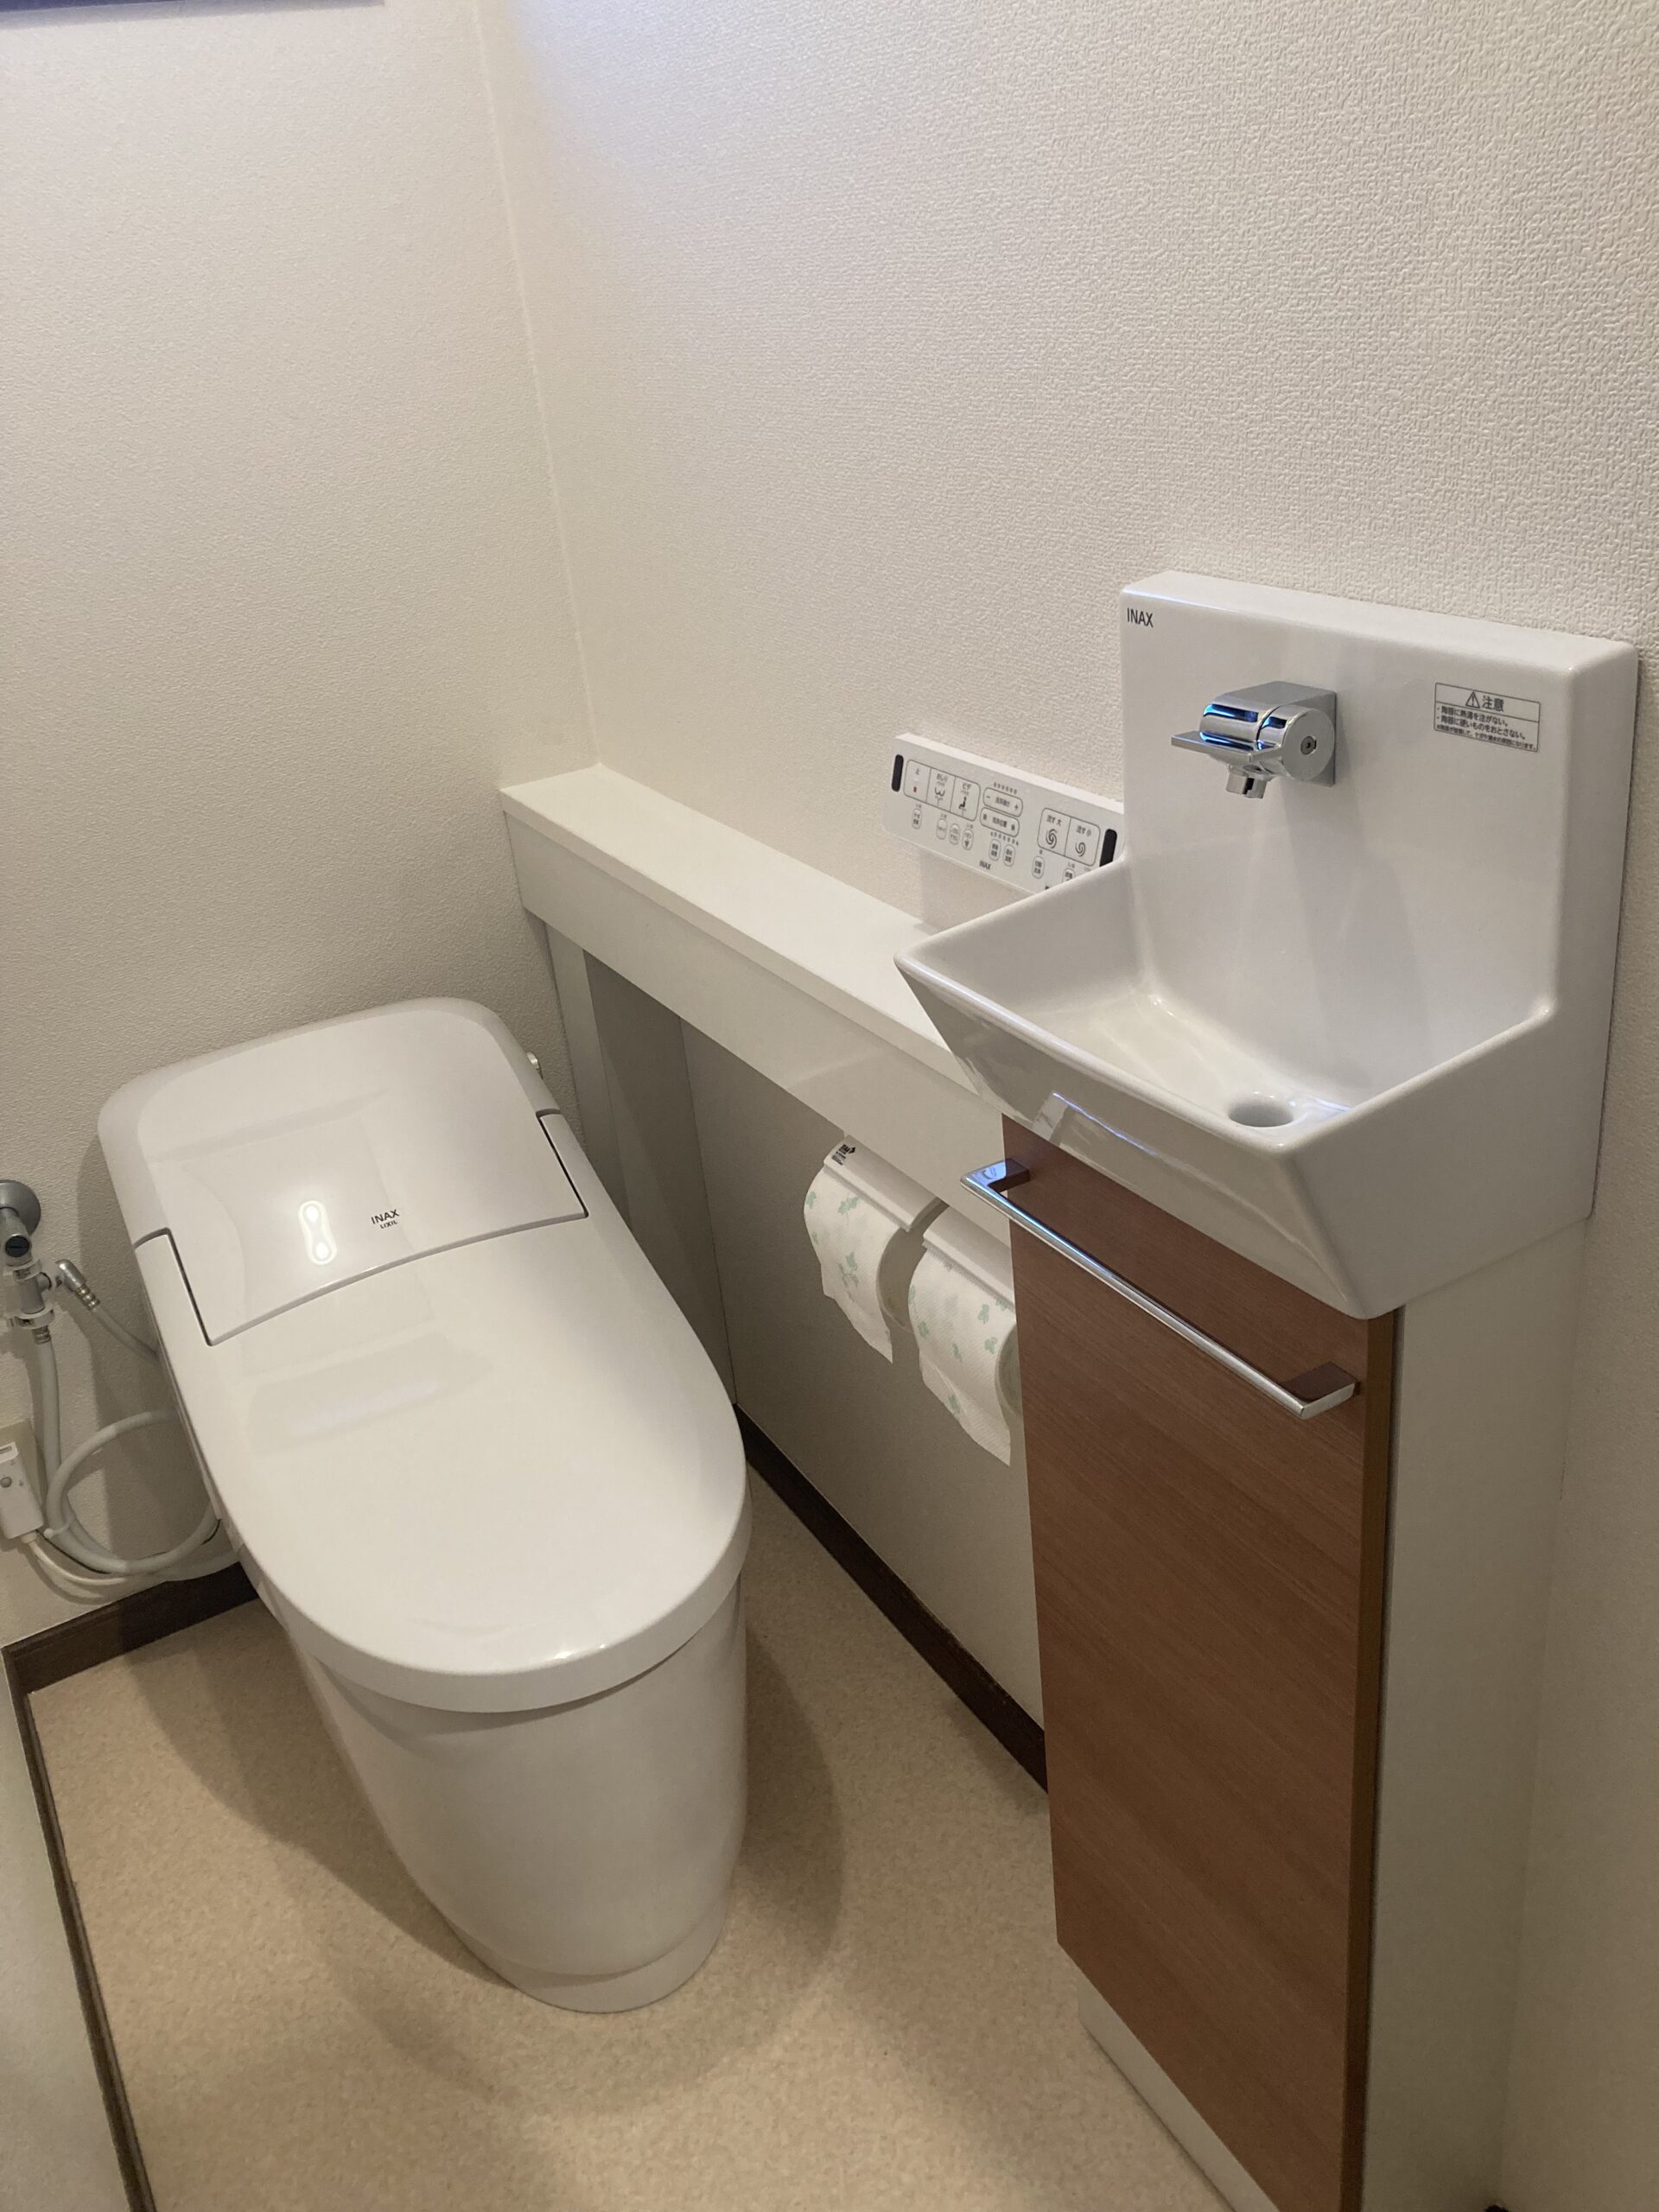 1階、LIXILプレアス手洗い付きカウンターへ・2階、TOTO　ZR1手洗い付きトイレ交換🚽